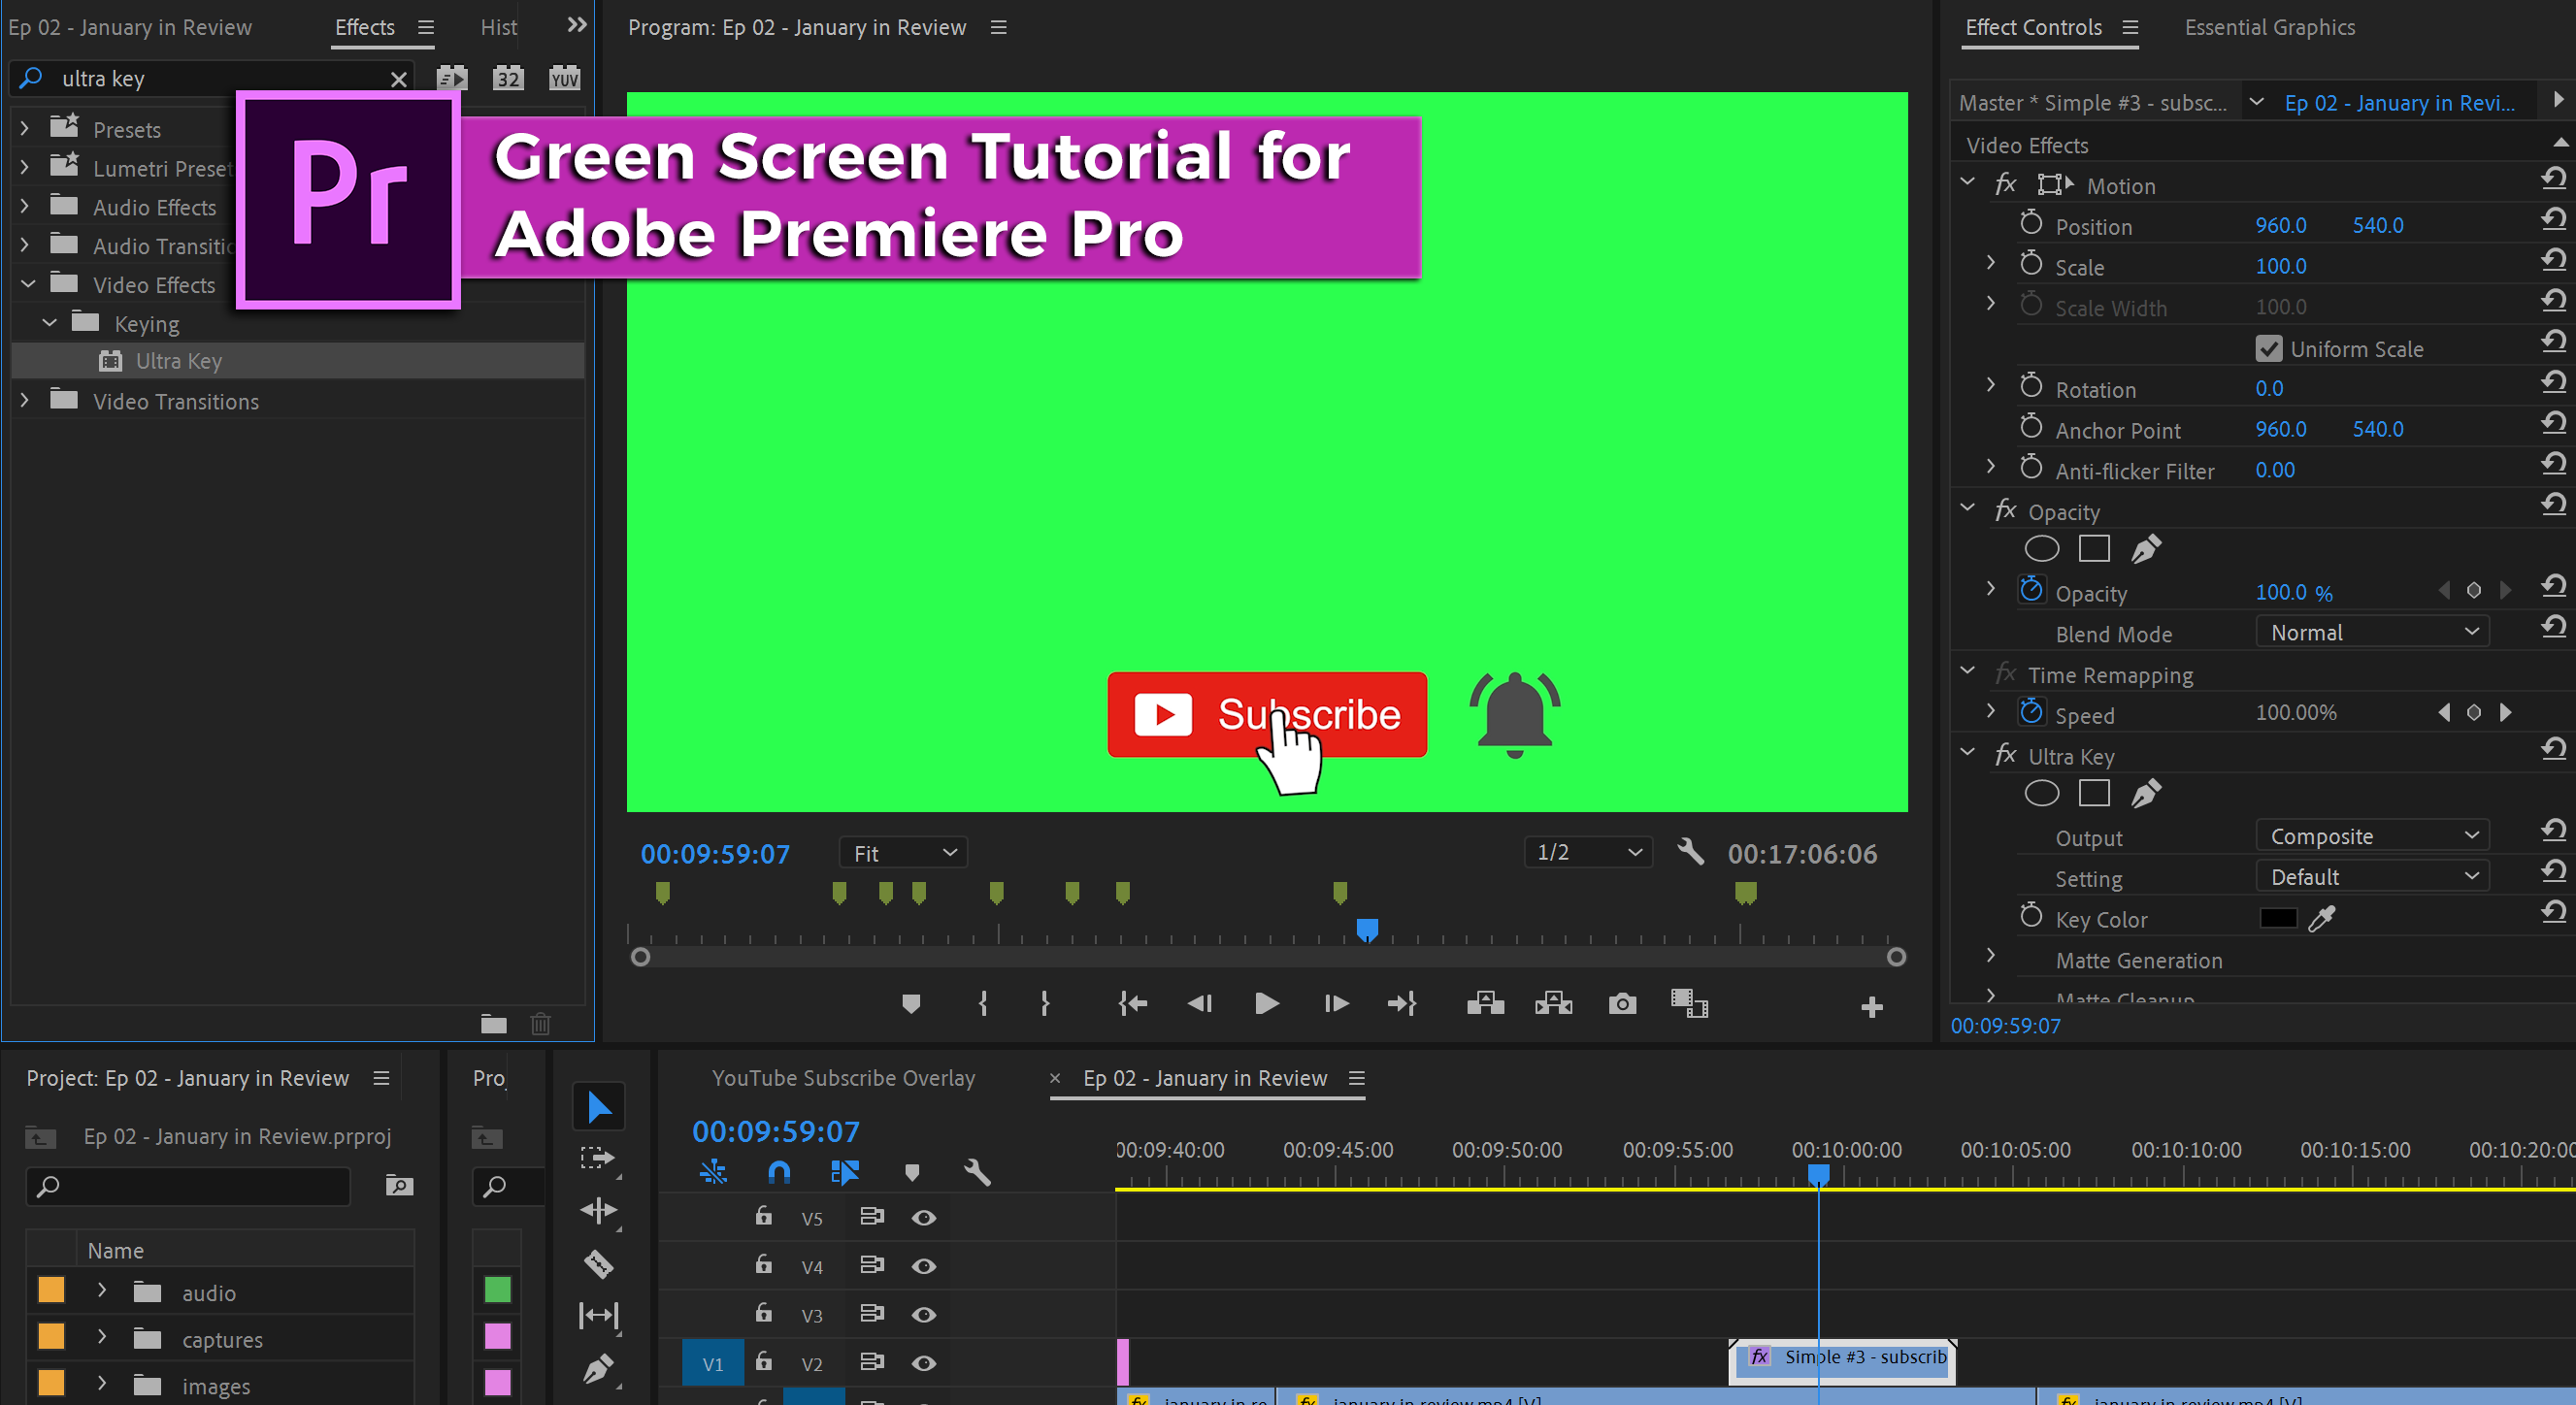 Green screen effect in Adobe Premiere Pro